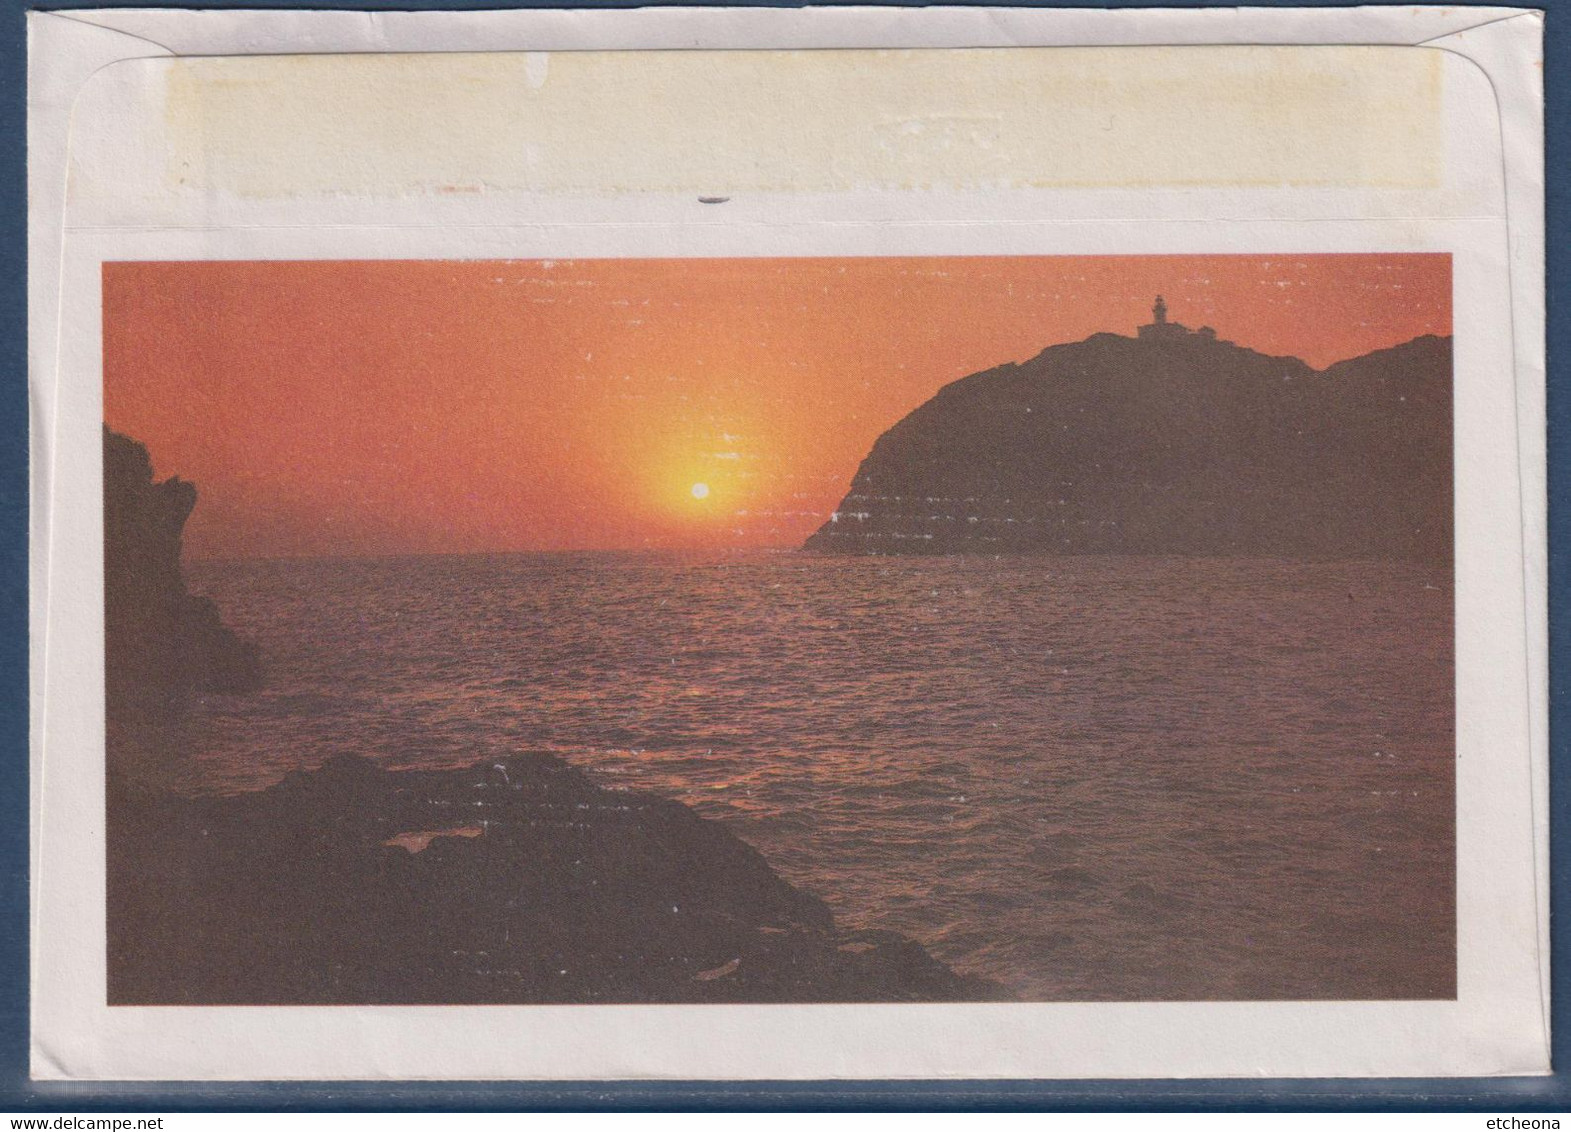 Enveloppe Illustrée A. Corsica Bastia 25.8.87 Flamme Son Musée D'ethnographie Son Soleil Monuments Timbre 2376 Marianne - Unclassified